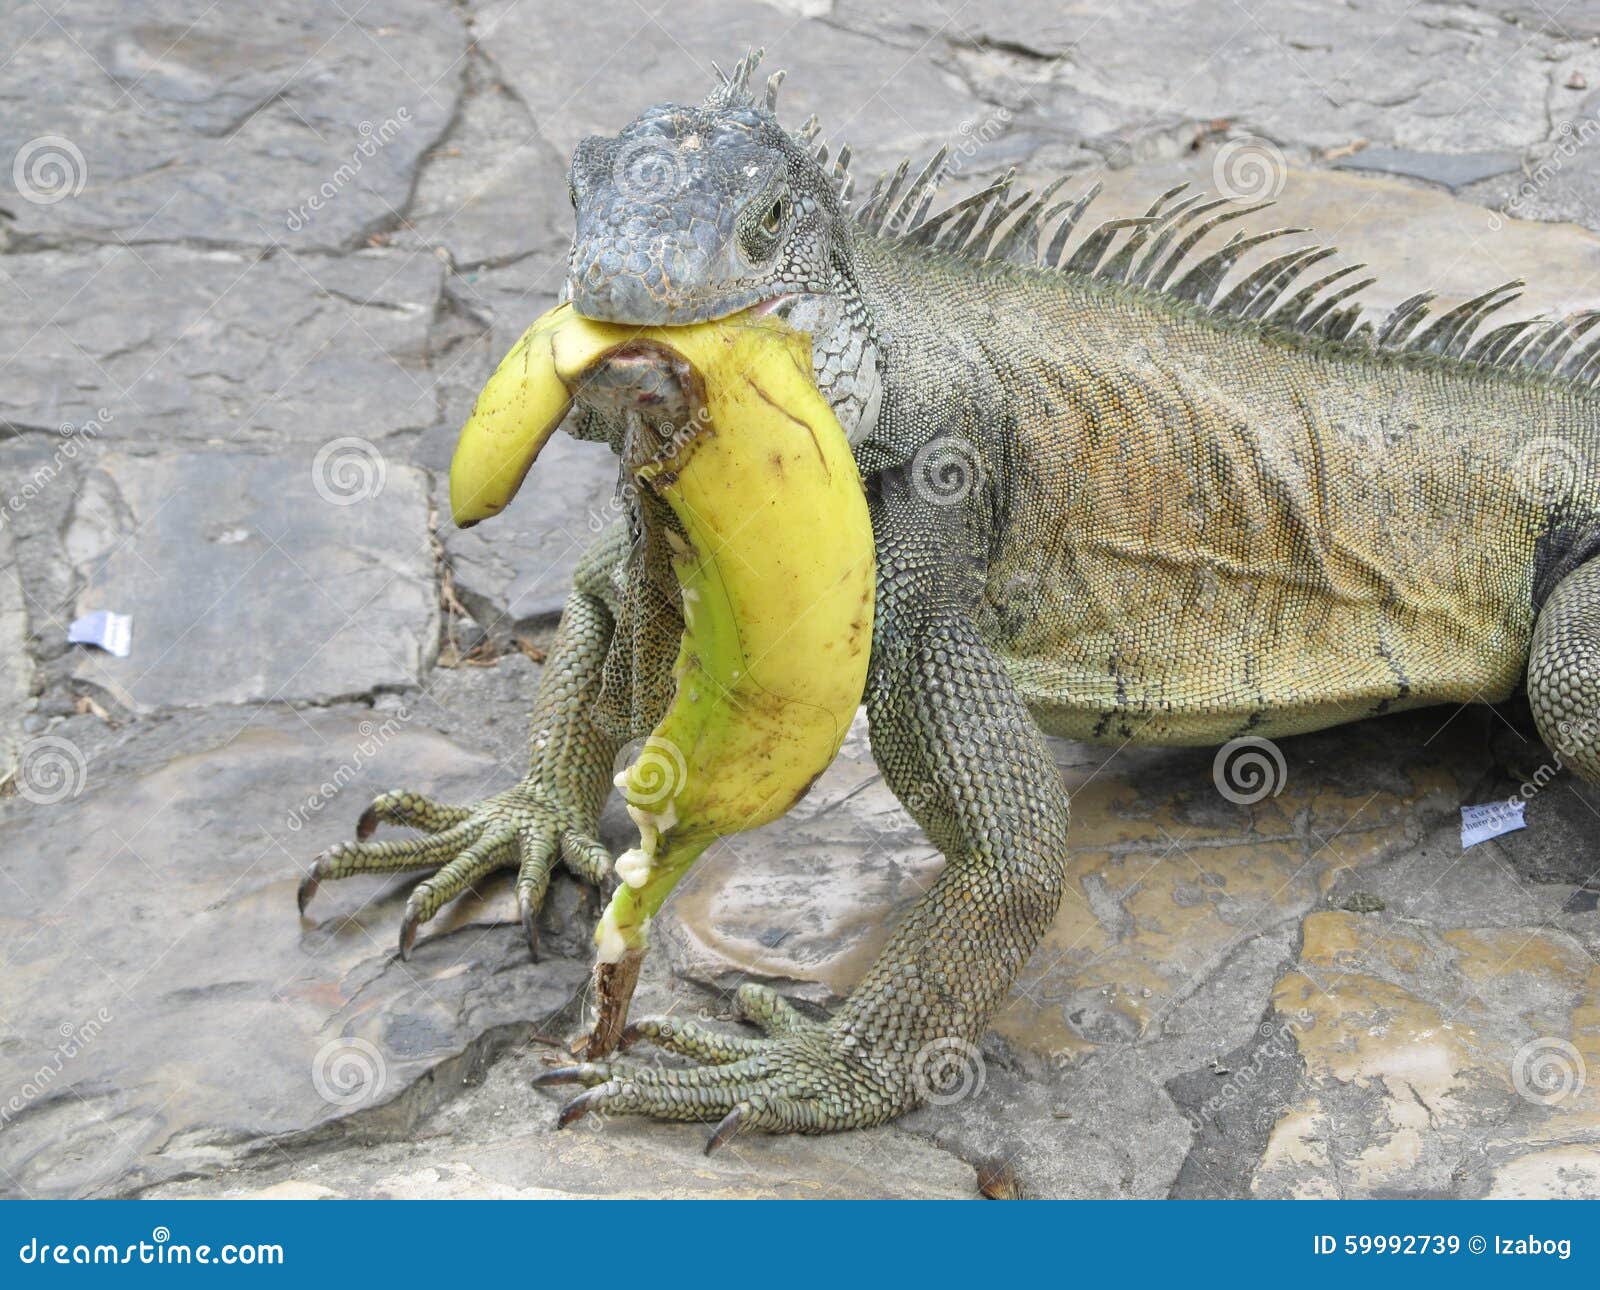 iguana banana